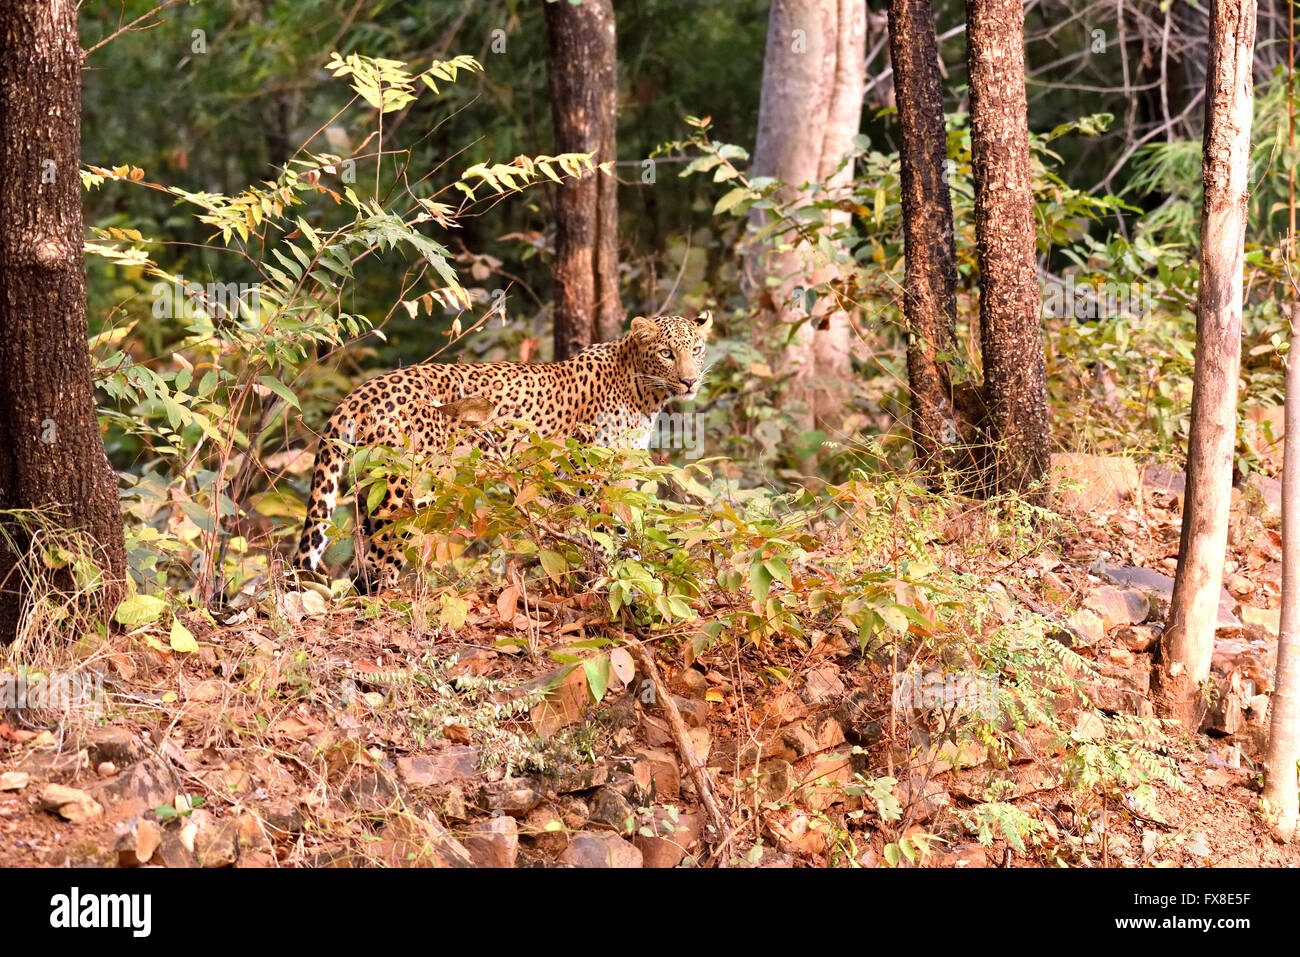 Leopard (Panthera pardus), la recherche, Tadoba Chandrapur, Maharashtra, Inde Banque D'Images